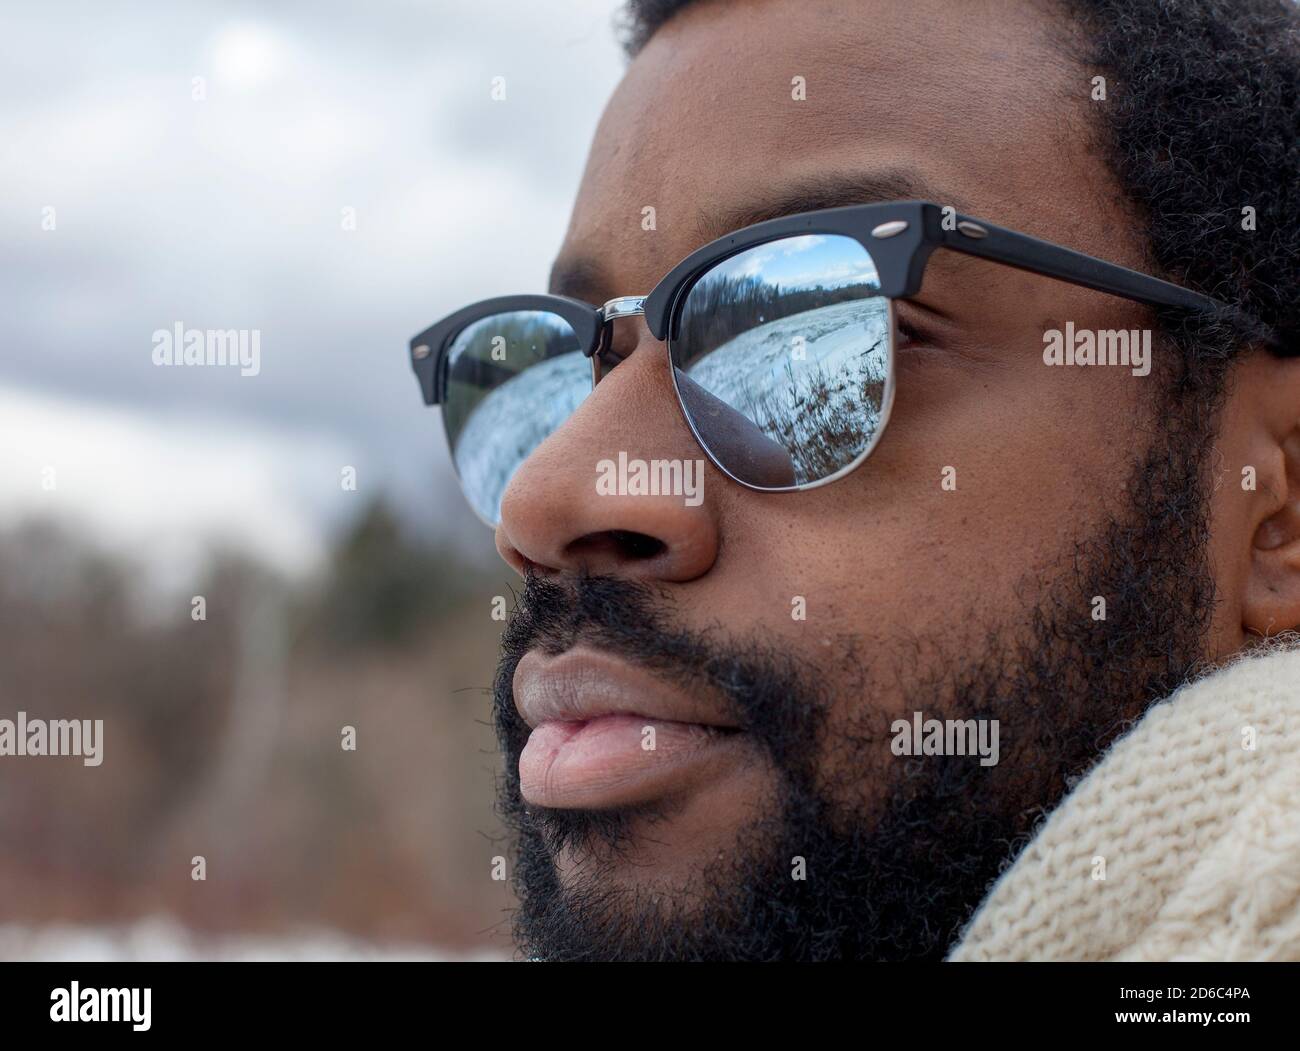 Un homme portant des lunettes de soleil de style Clubmaster regarde sur un  marais gelé, reflété dans les lentilles de ses lunettes, lors d'une journée  d'hiver à Ithaca, NY Photo Stock -